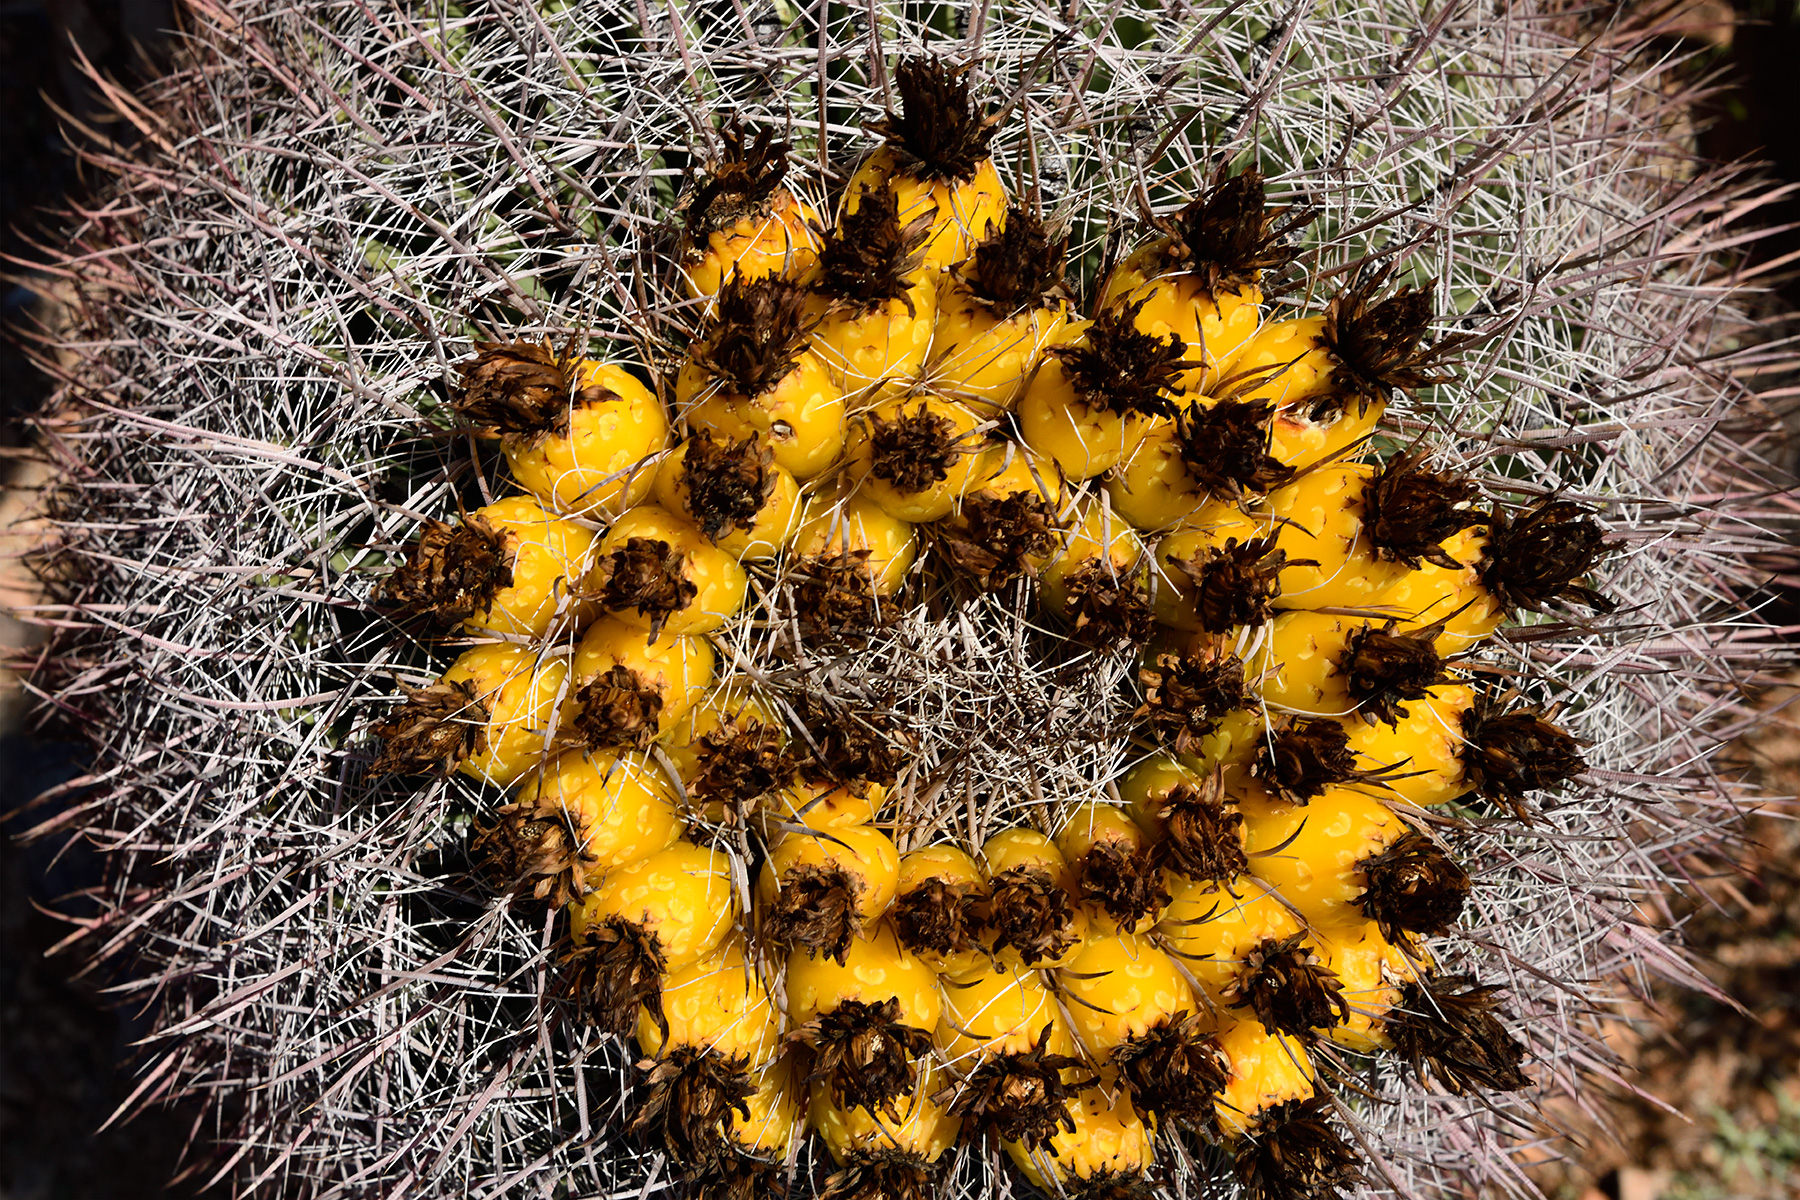 Parc National de Saguaro (Arizona, USA) - "Barrel cactus" : détail de la couronne de fruits jaunes au sommet